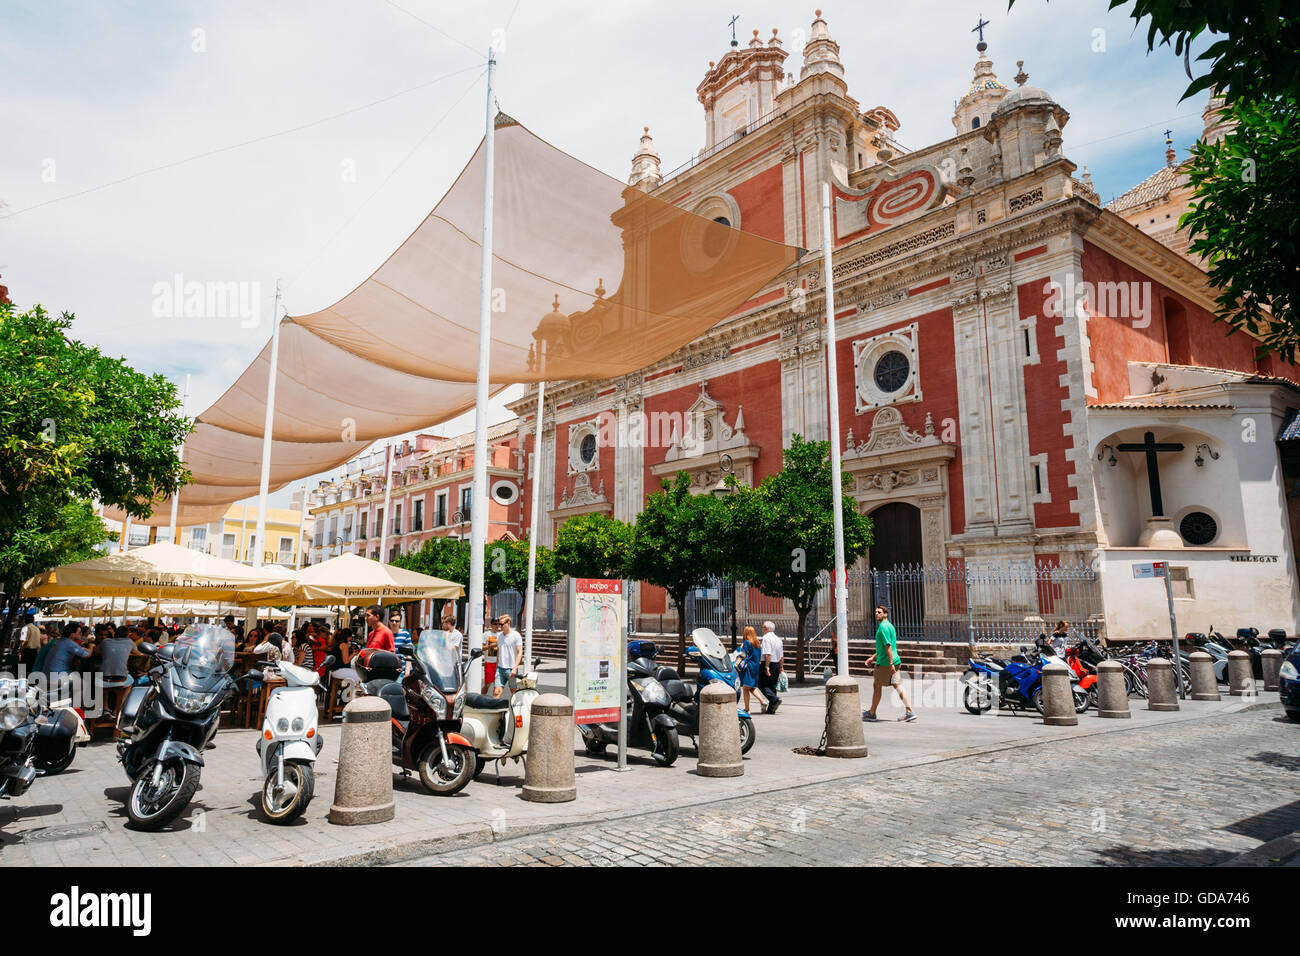 Siviglia, Spagna - 24 Giugno 2015: moto, moto, scooter parcheggiata vicino alla chiesa barocca di El Salvador o Iglesia del Salva Foto Stock